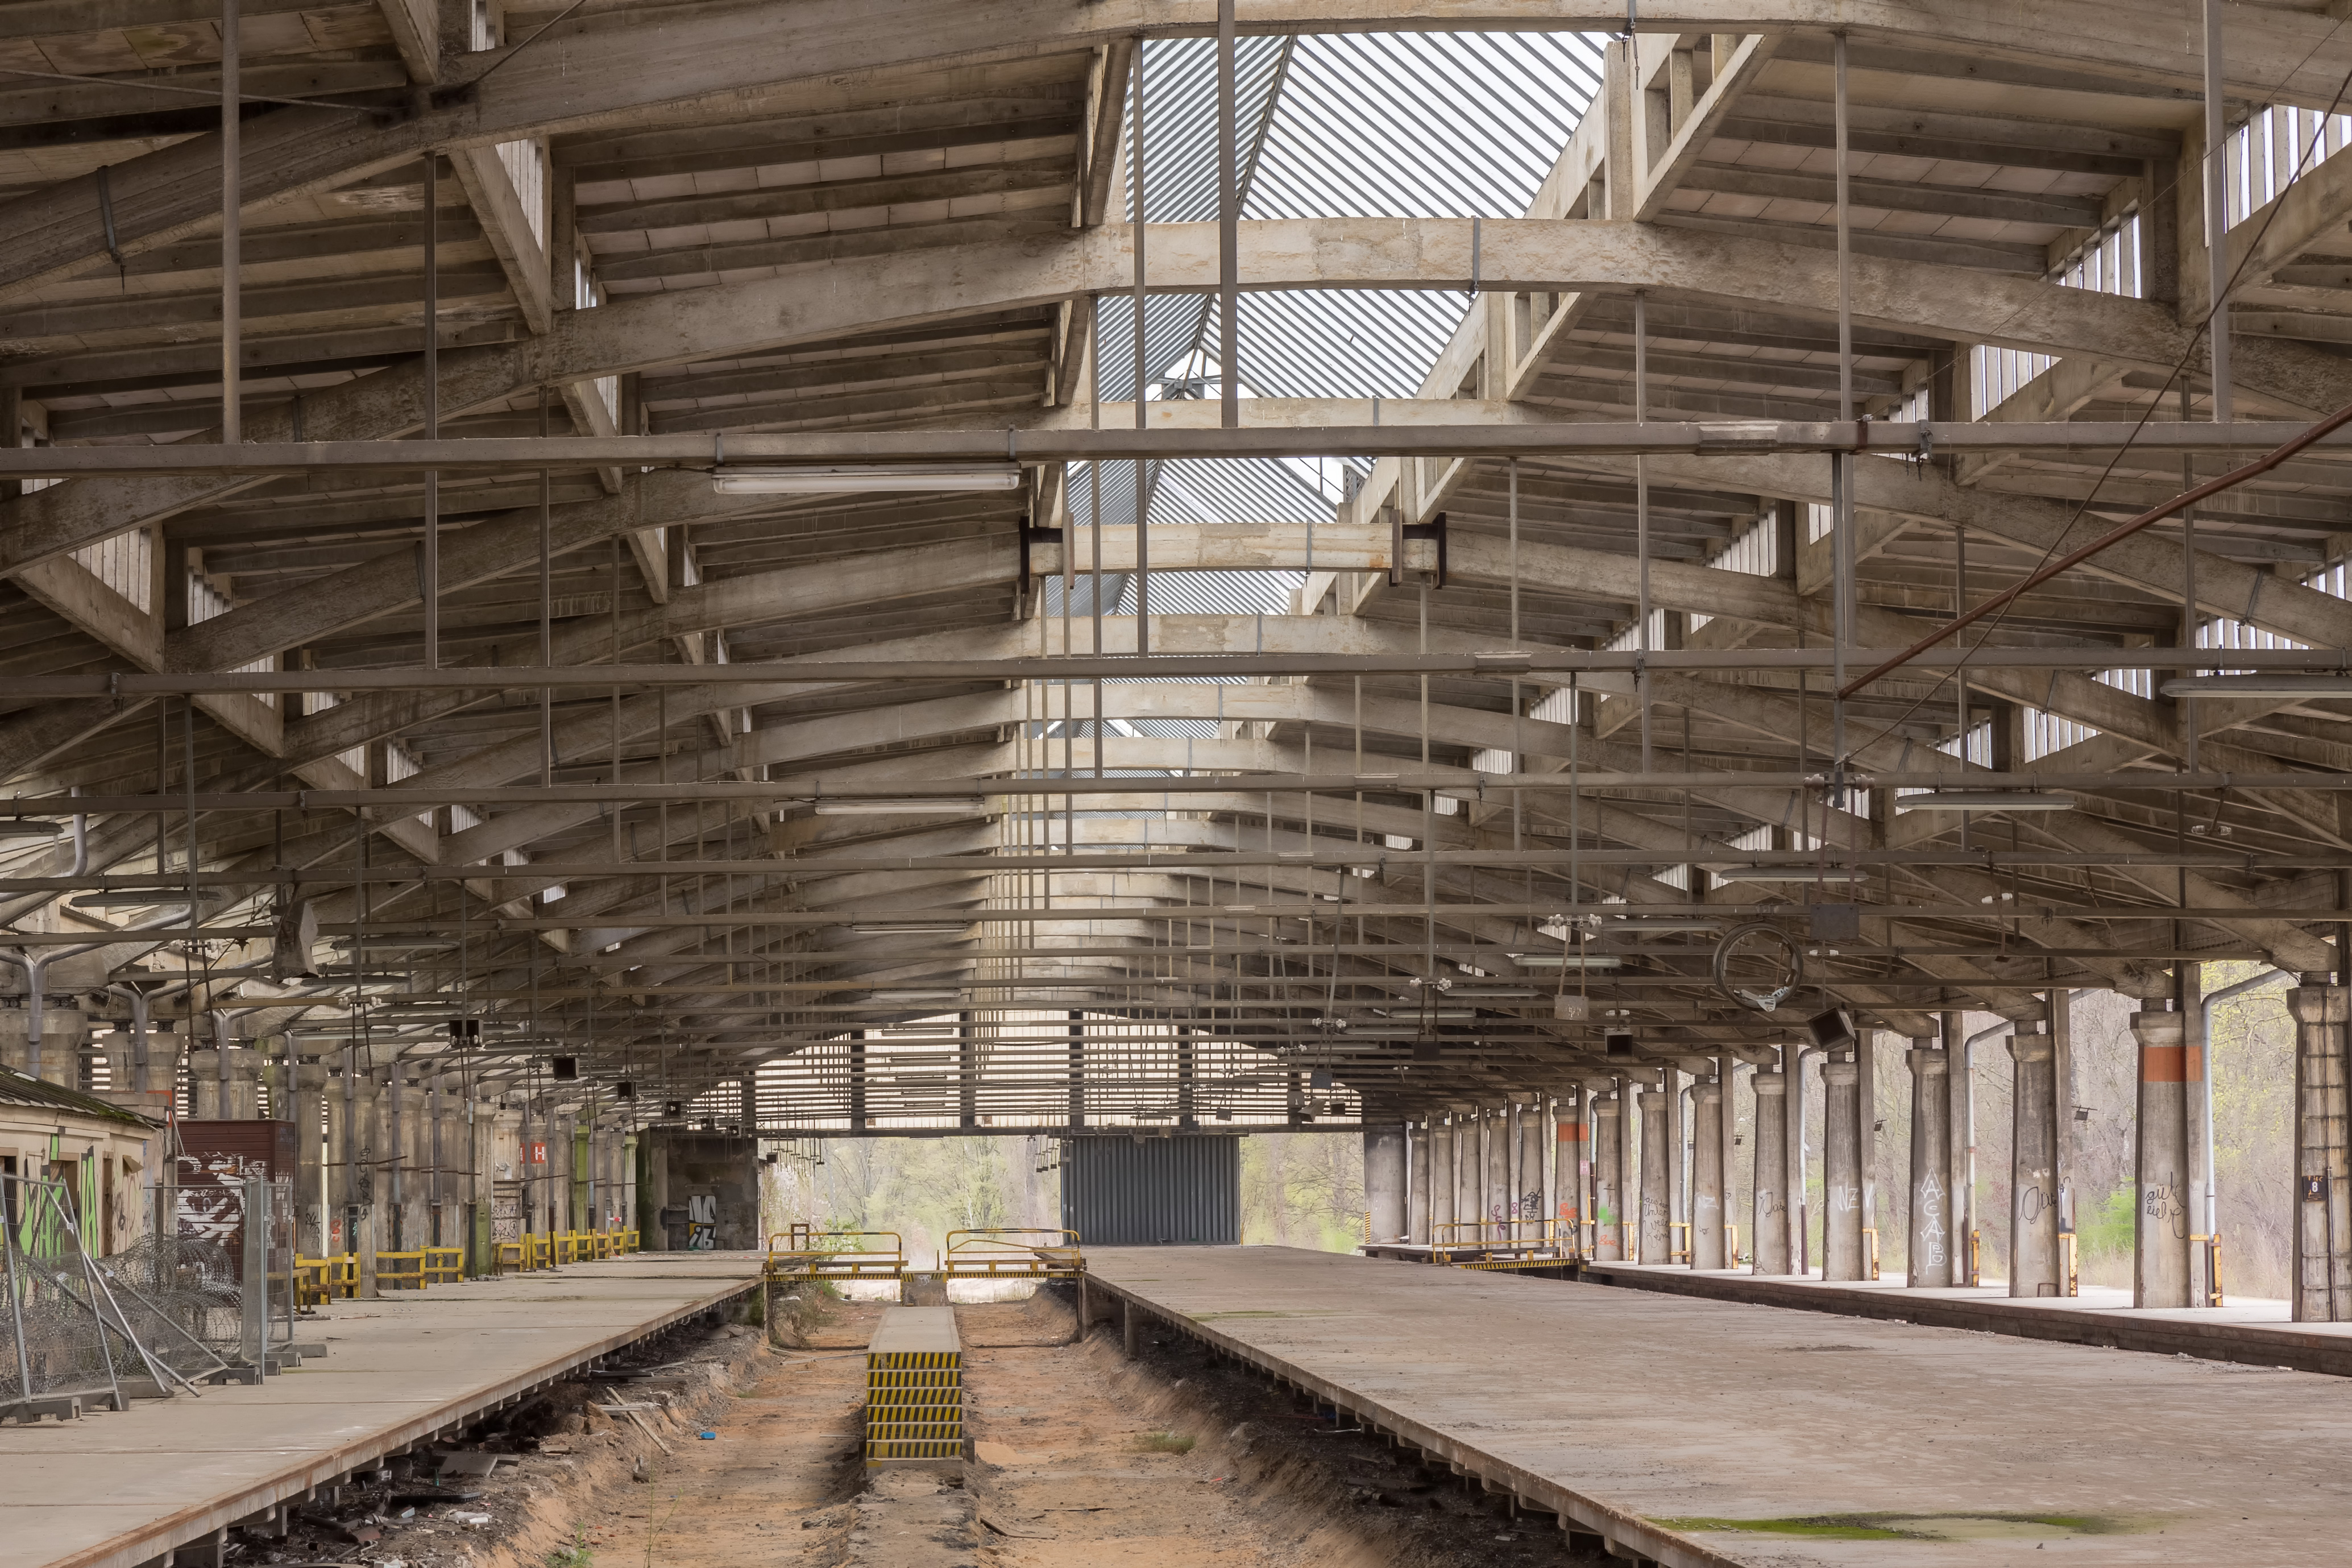 2016-04-09 Güterumschlaghallen am Nürnberger Südbahnhof - 3824 HDR